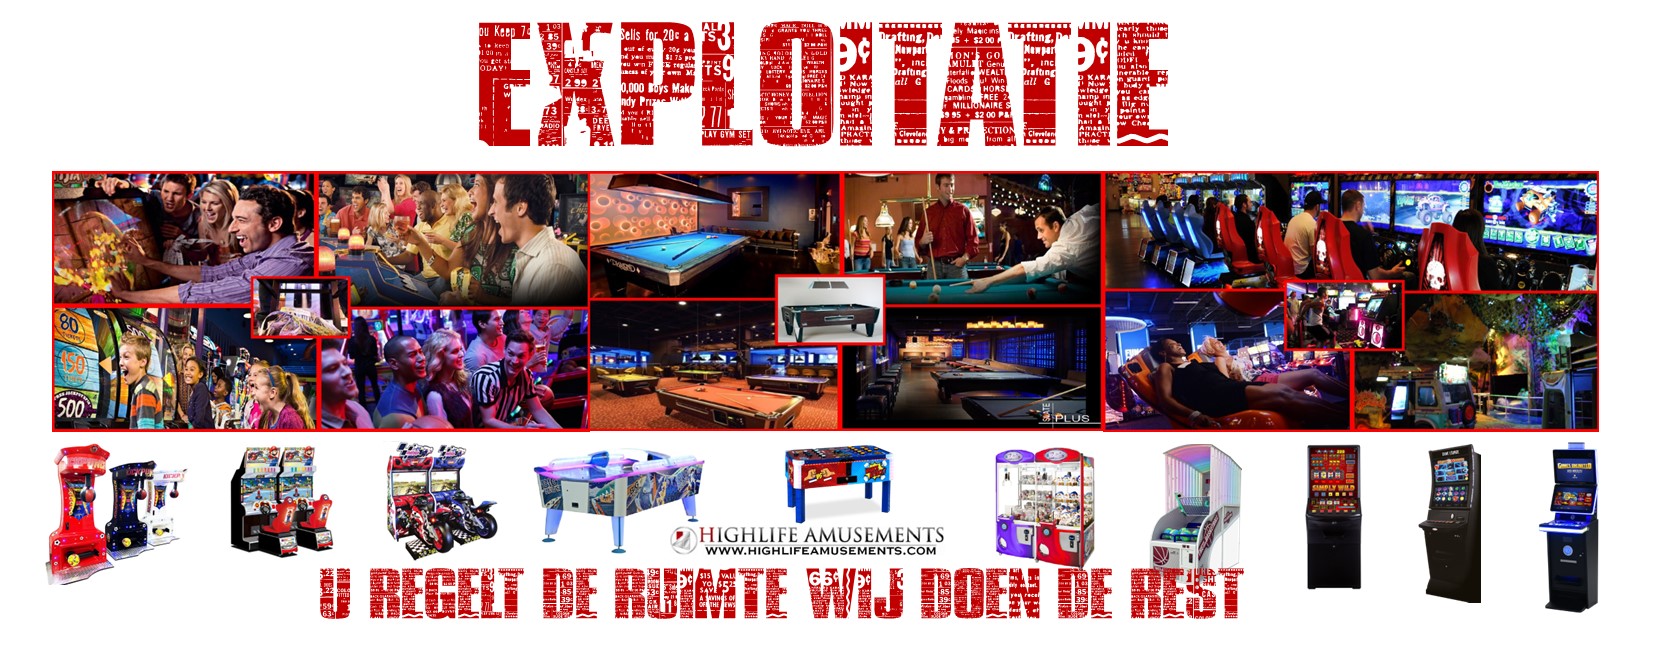 exploitatie van kansspellen, behnedighiedsspellen, gameroom, gamehal, automatenhal, gokkasten, fruitautomaten